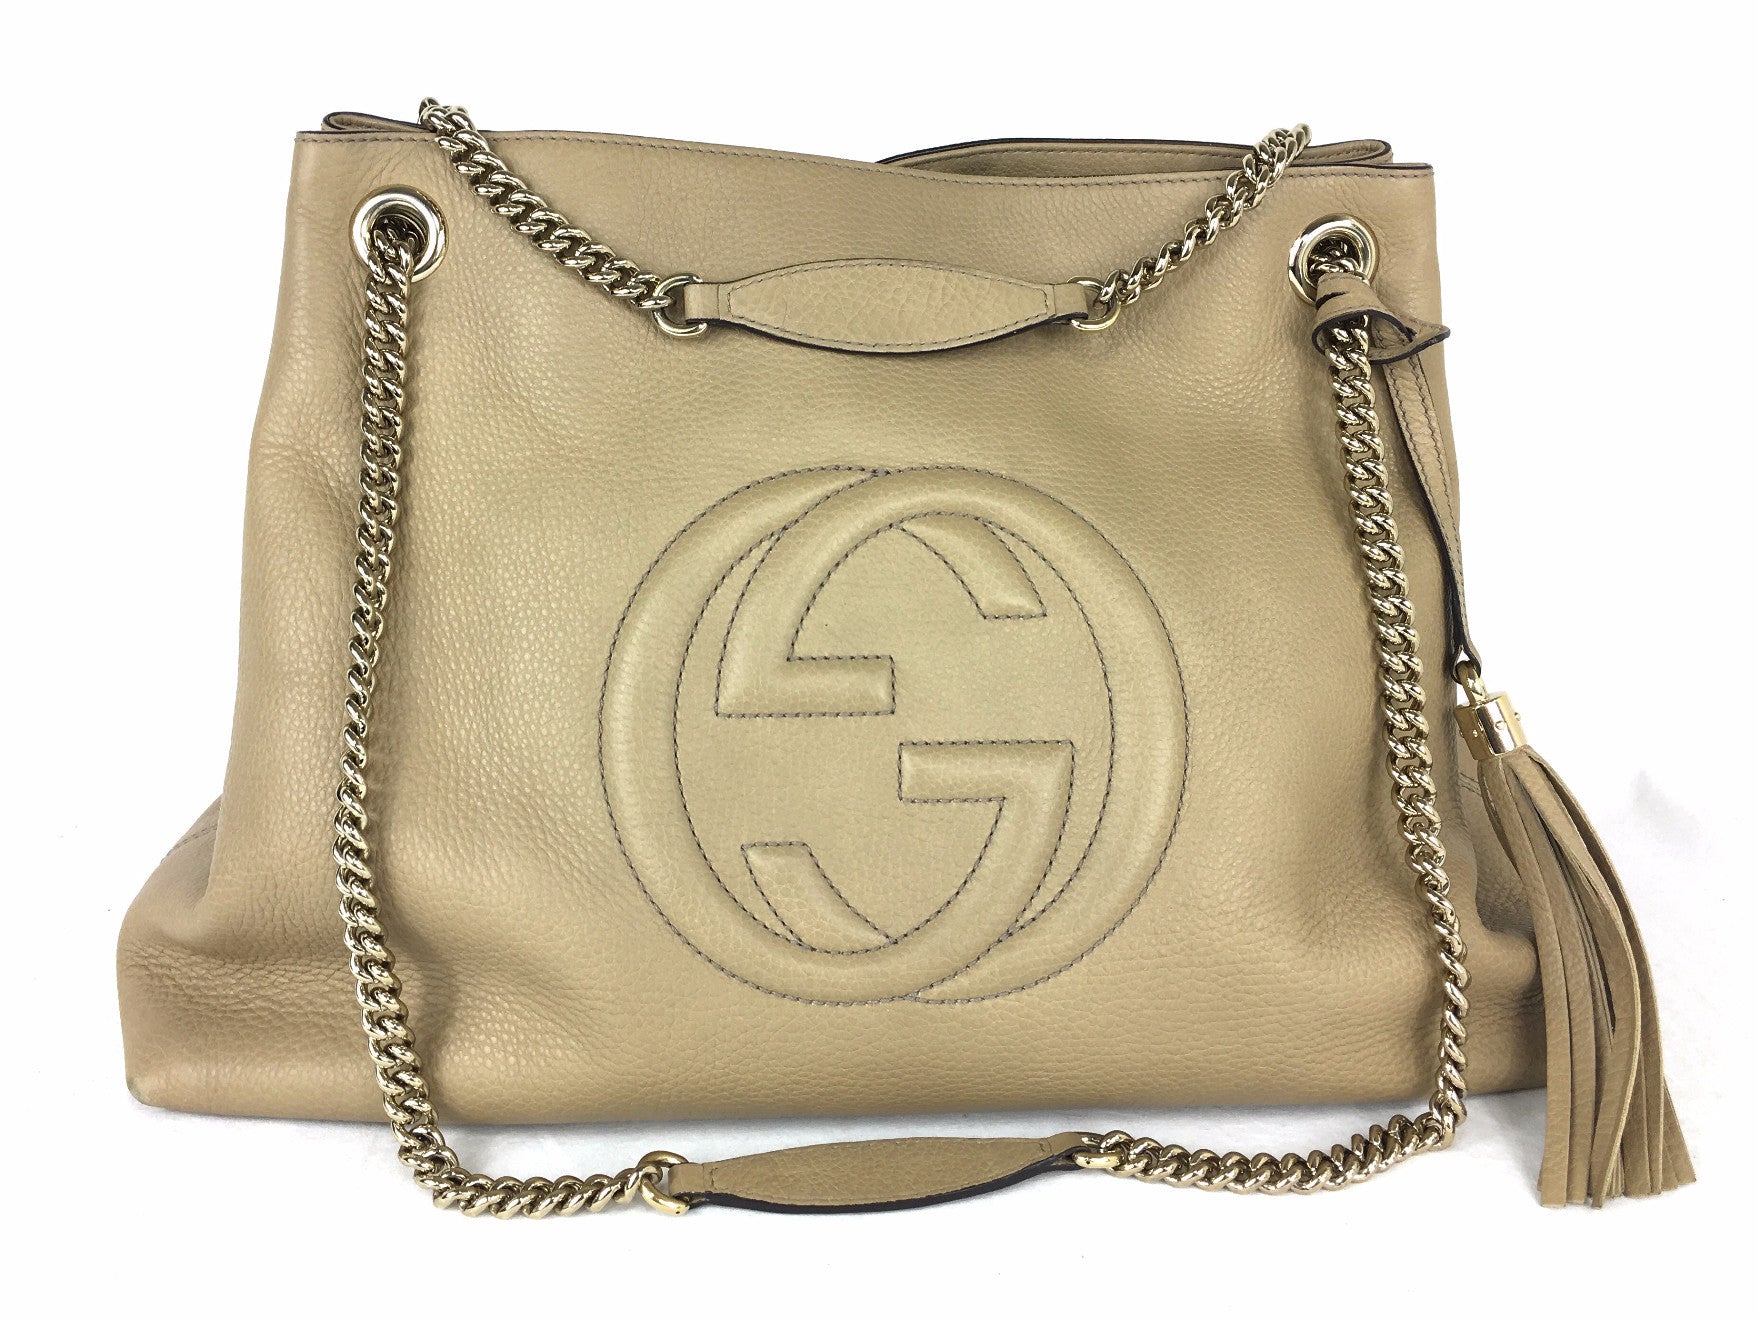 Gucci Soho Flap Bag Champagne Gold at Jill's Consignment